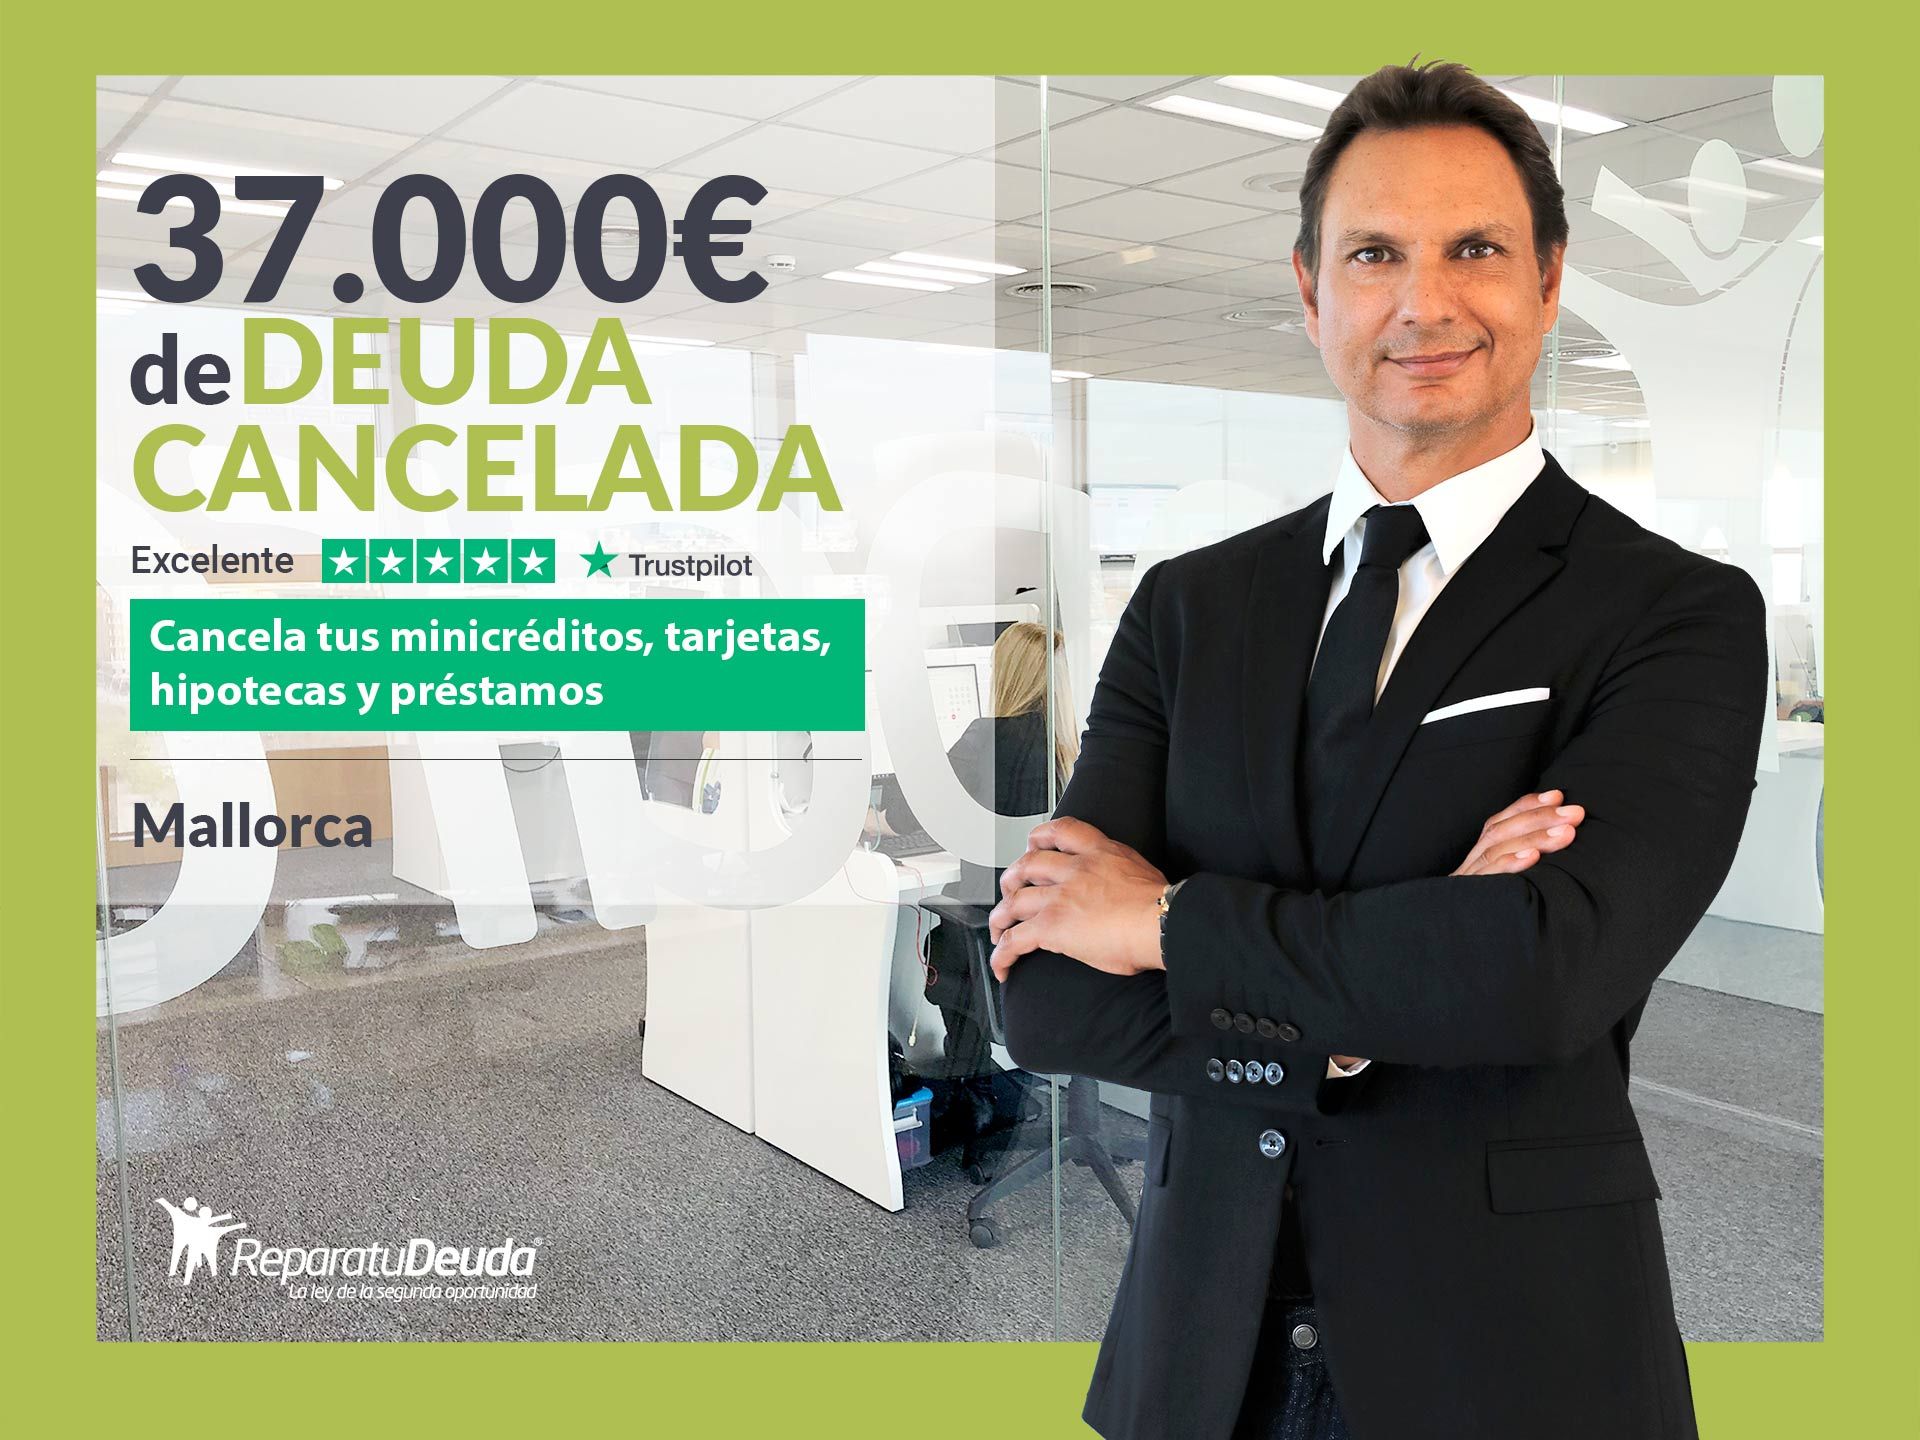 Repara tu Deuda Abogados cancela 37.000? en Mallorca (Baleares) con la Ley de Segunda Oportunidad